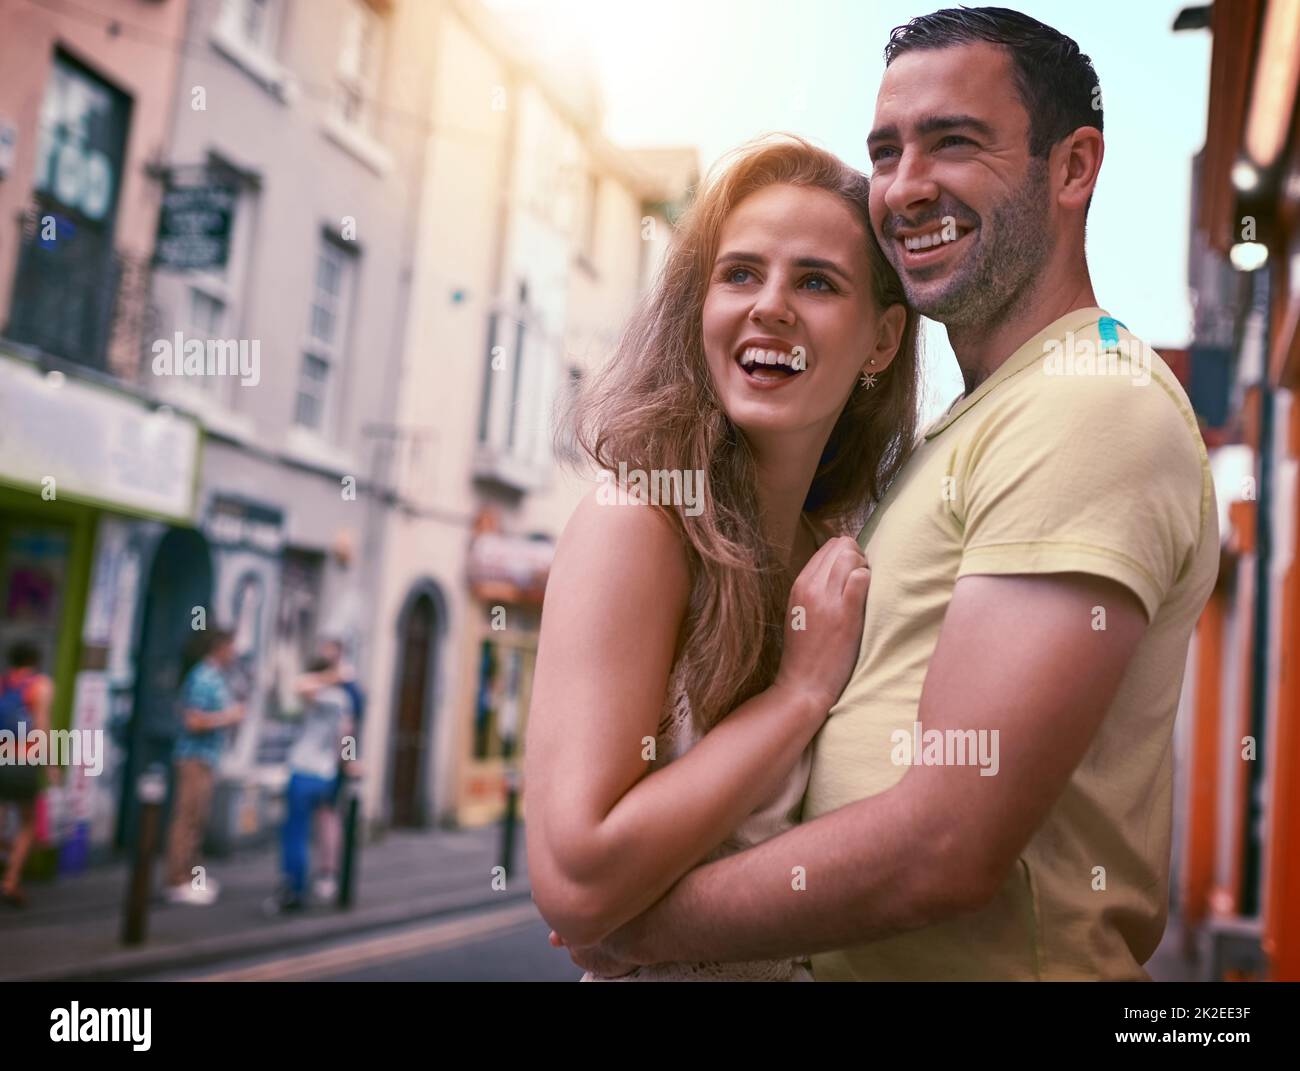 Ihre Liebe auf der ganzen Welt. Aufnahme eines glücklichen jungen Paares, das einen liebevollen Moment bei der Erkundung einer fremden Stadt teilt. Stockfoto